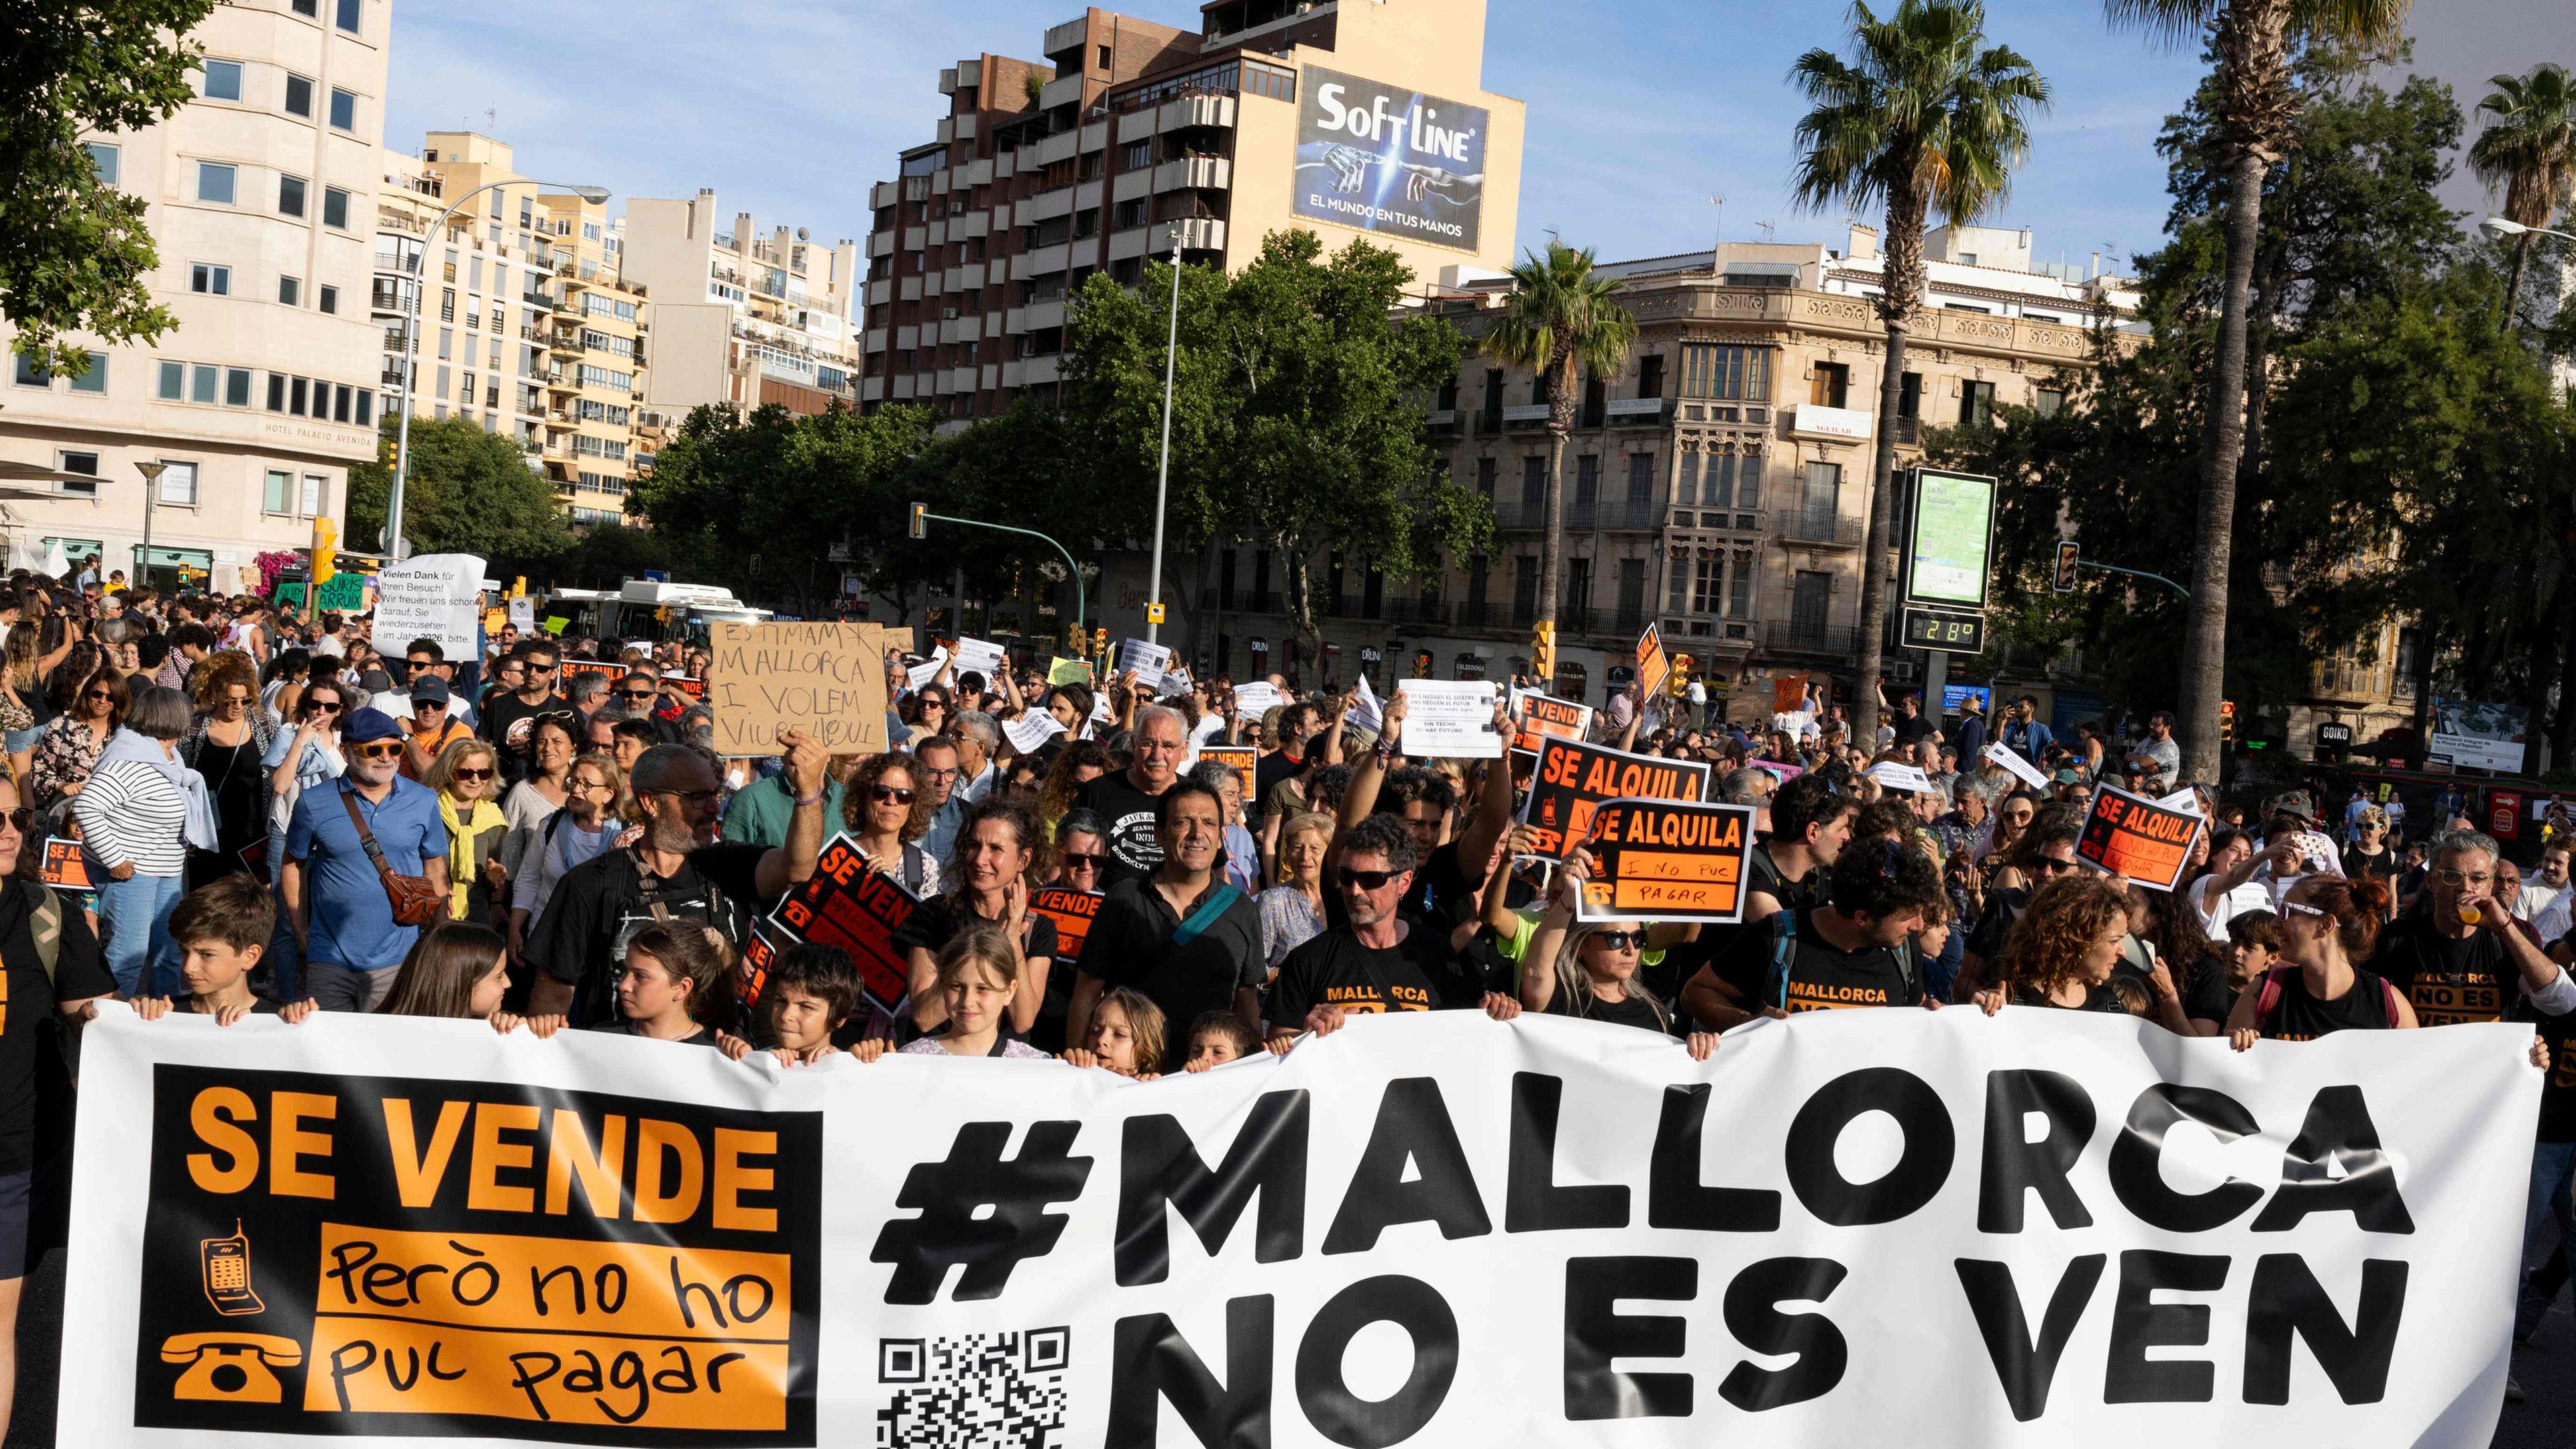 Proteste auf Mallorca gegen Massentourismus